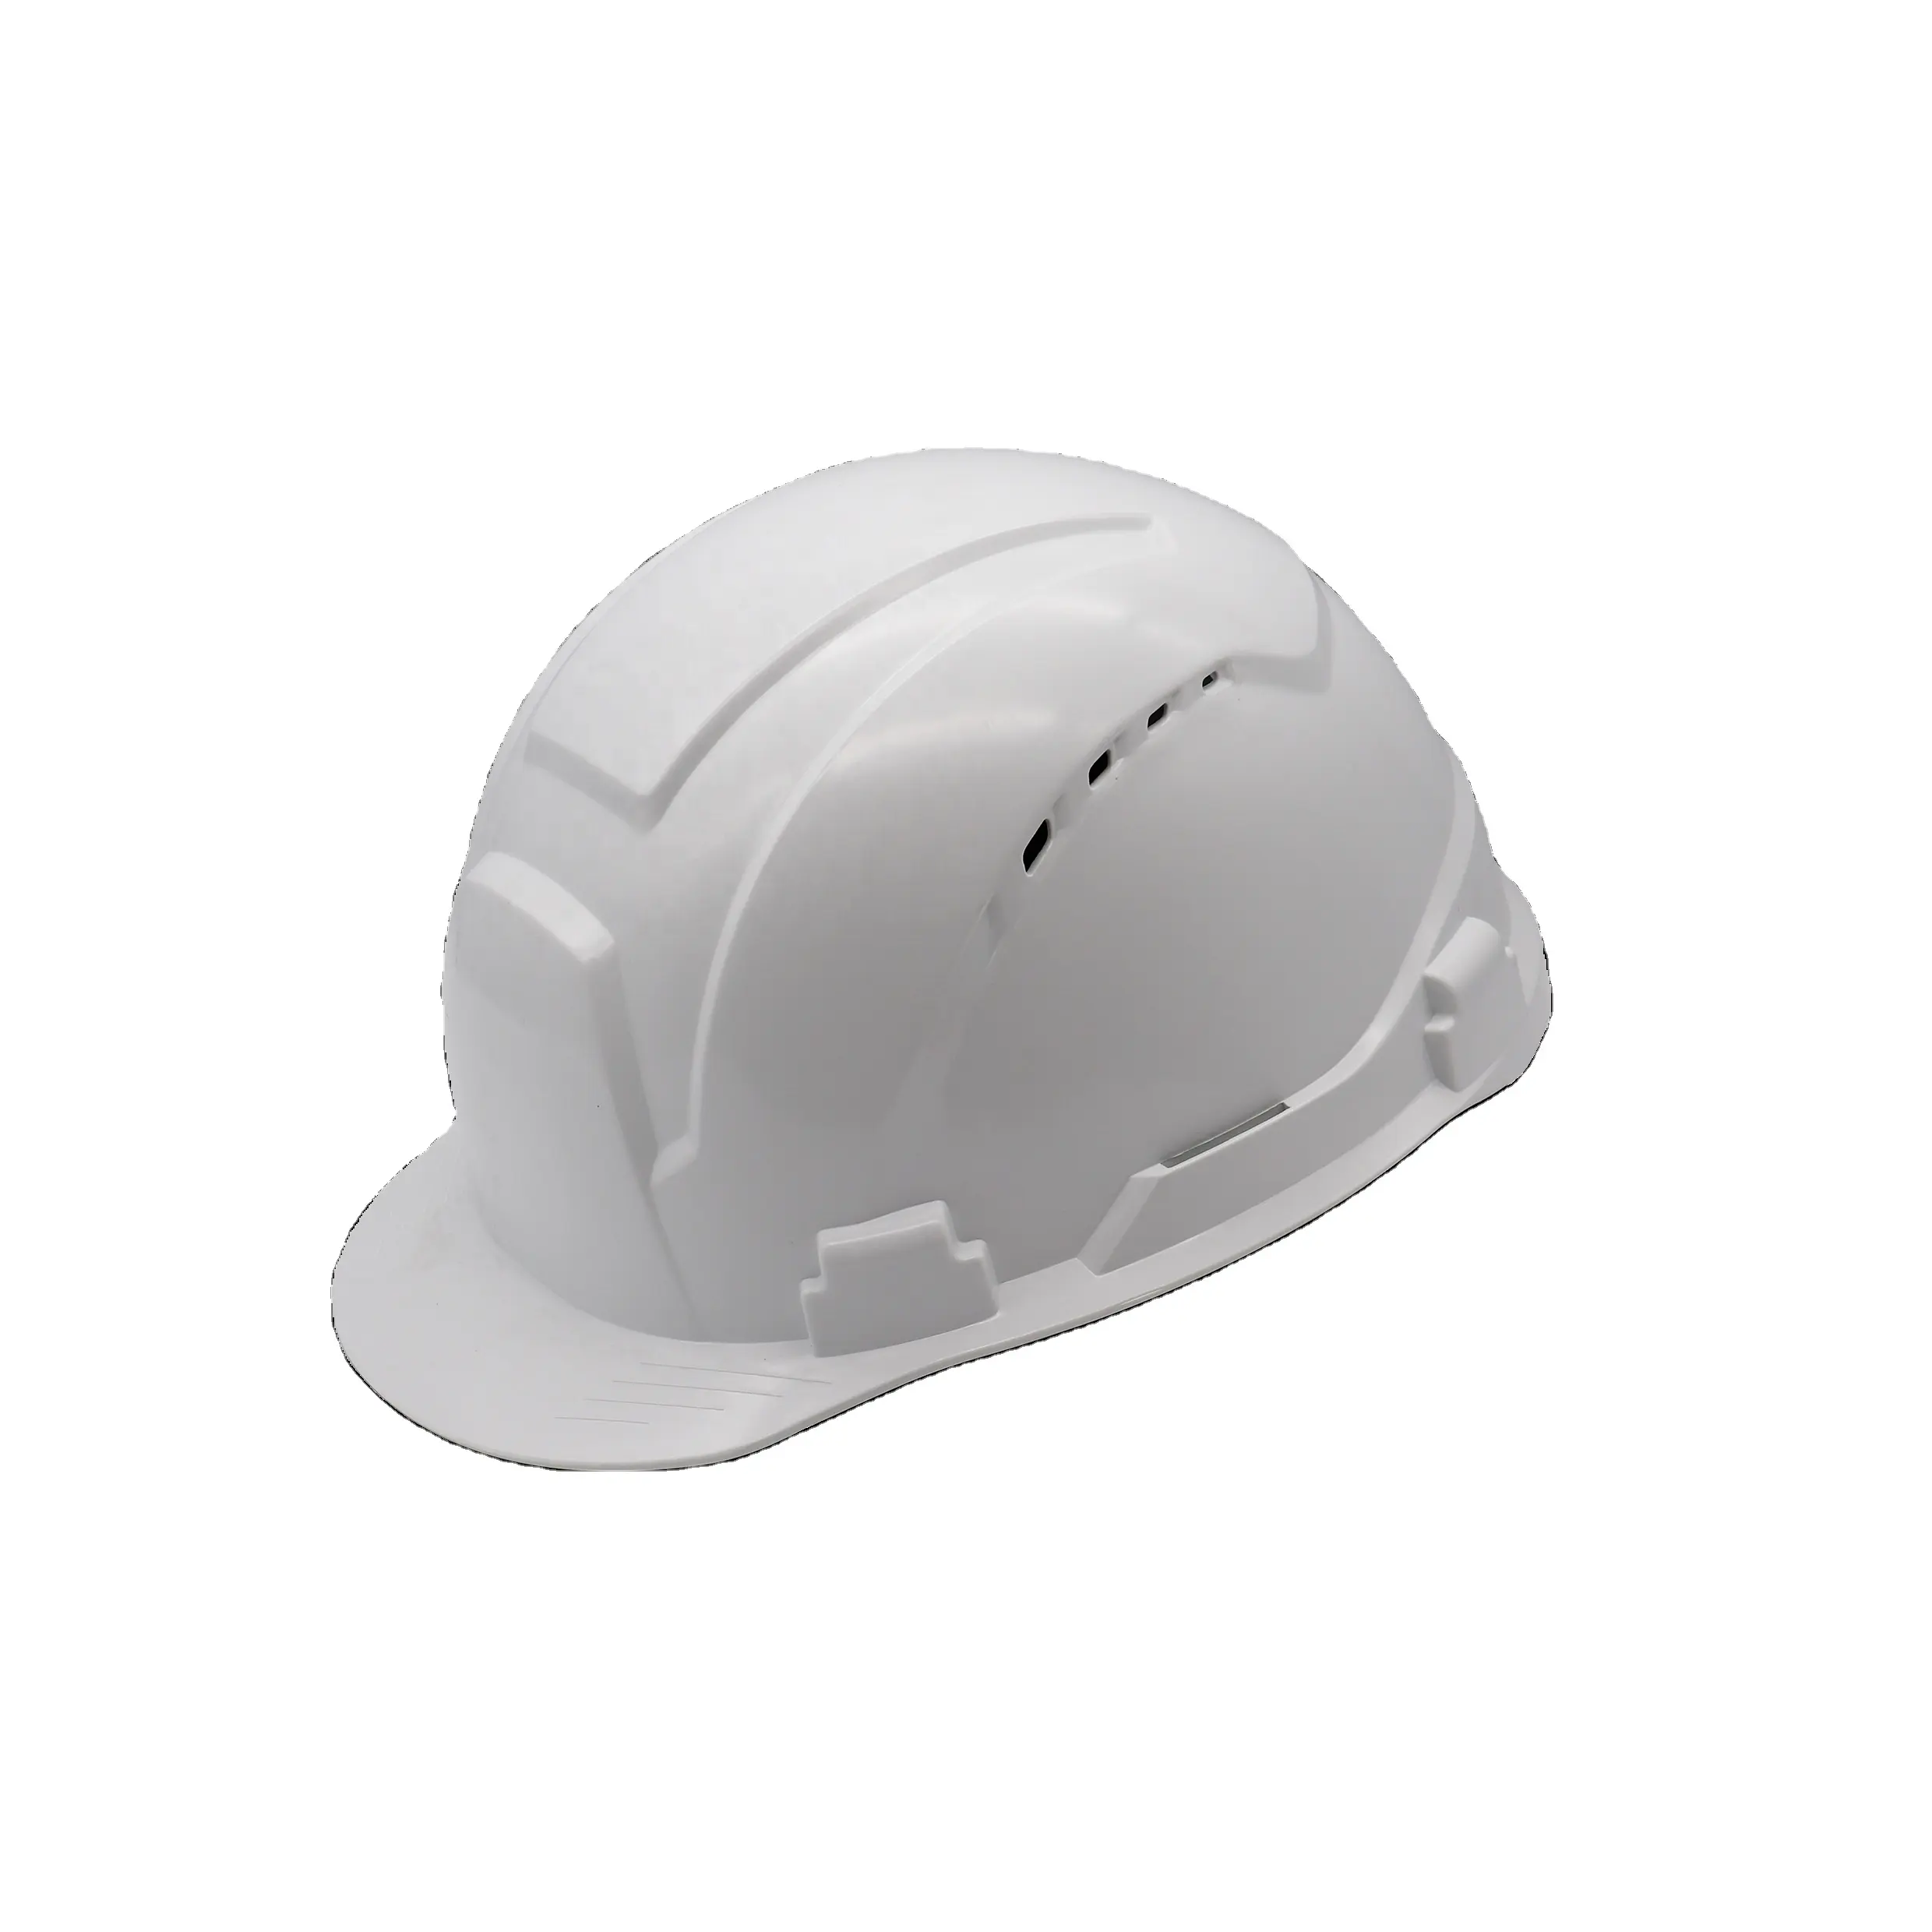 광산 개인 보호 장비 핫 세일 저렴한 가격 공장 ce 안전 헬멧 하드 모자